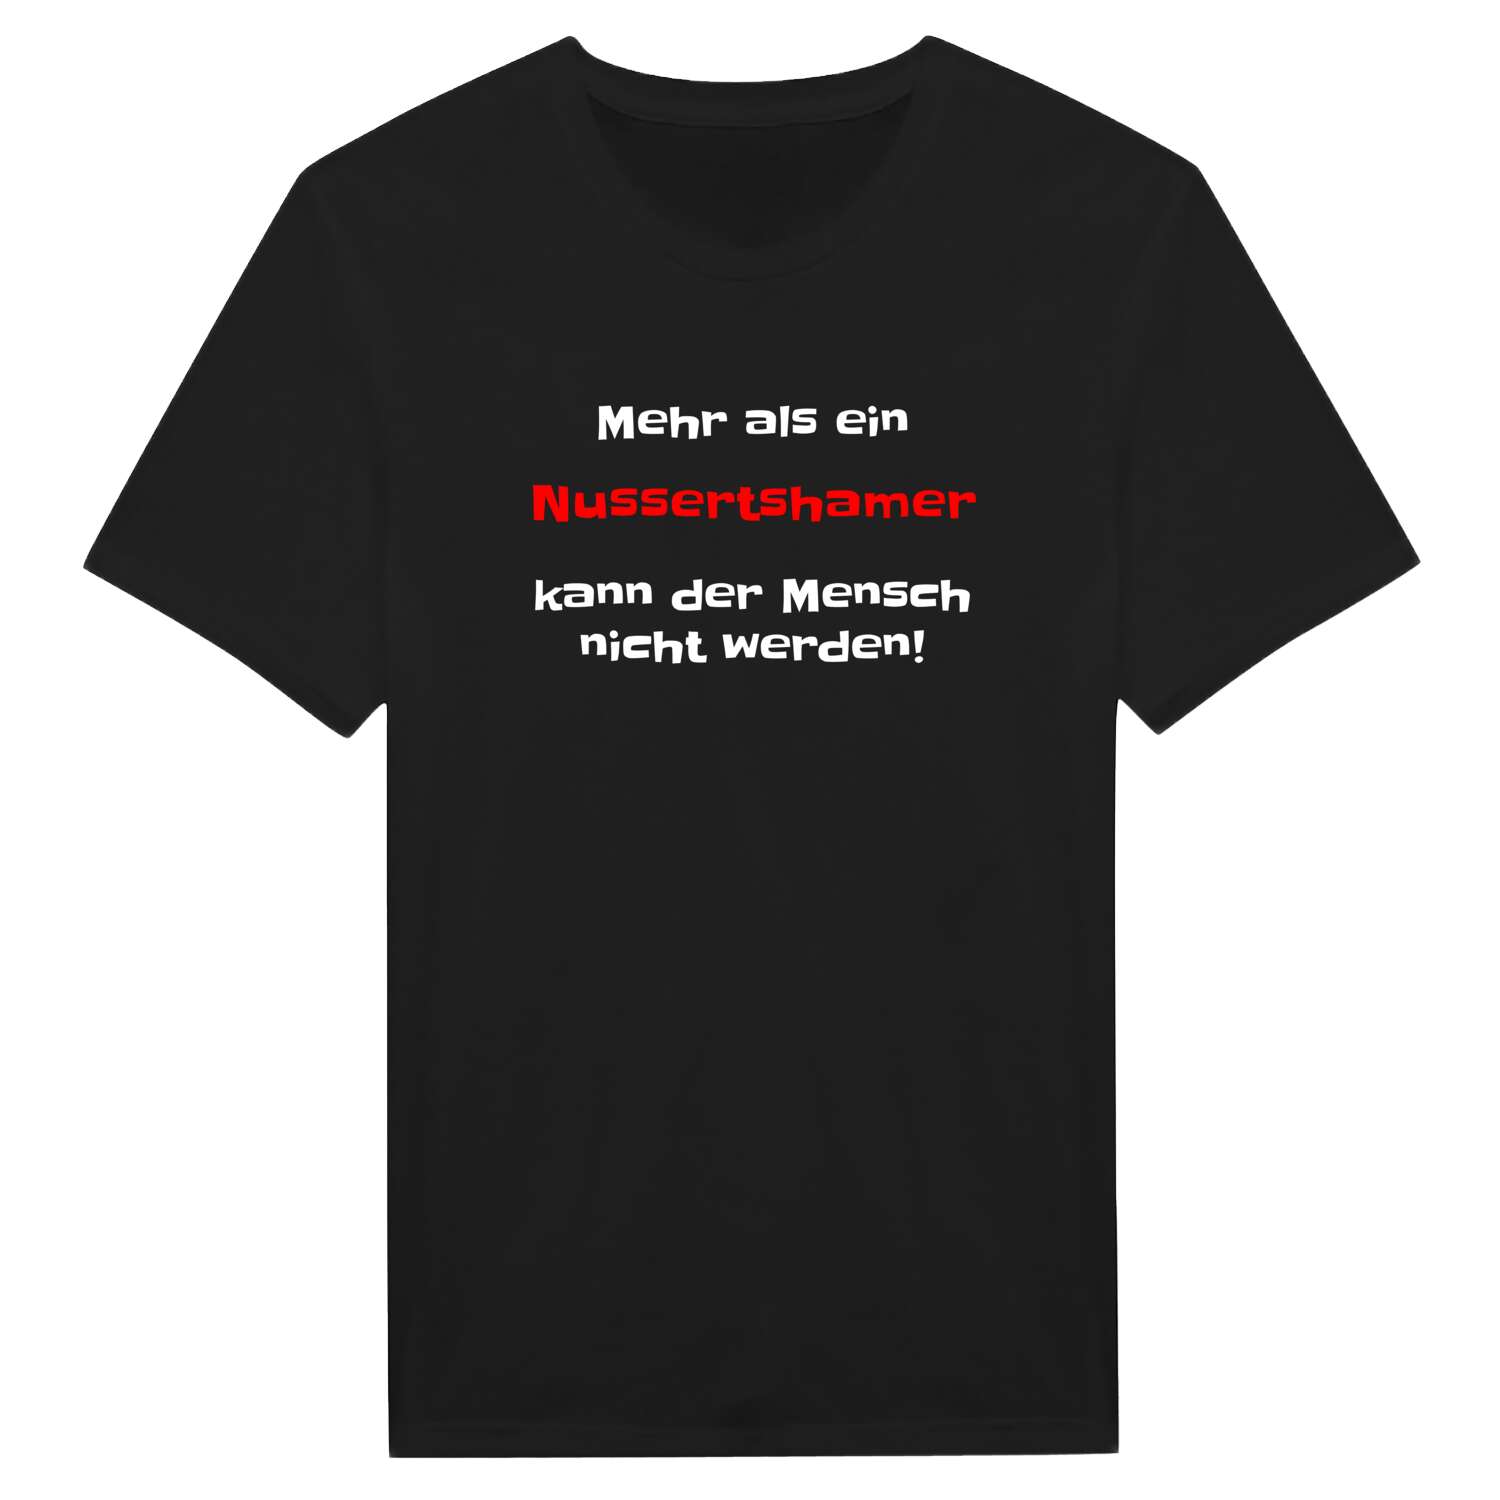 Nussertsham T-Shirt »Mehr als ein«